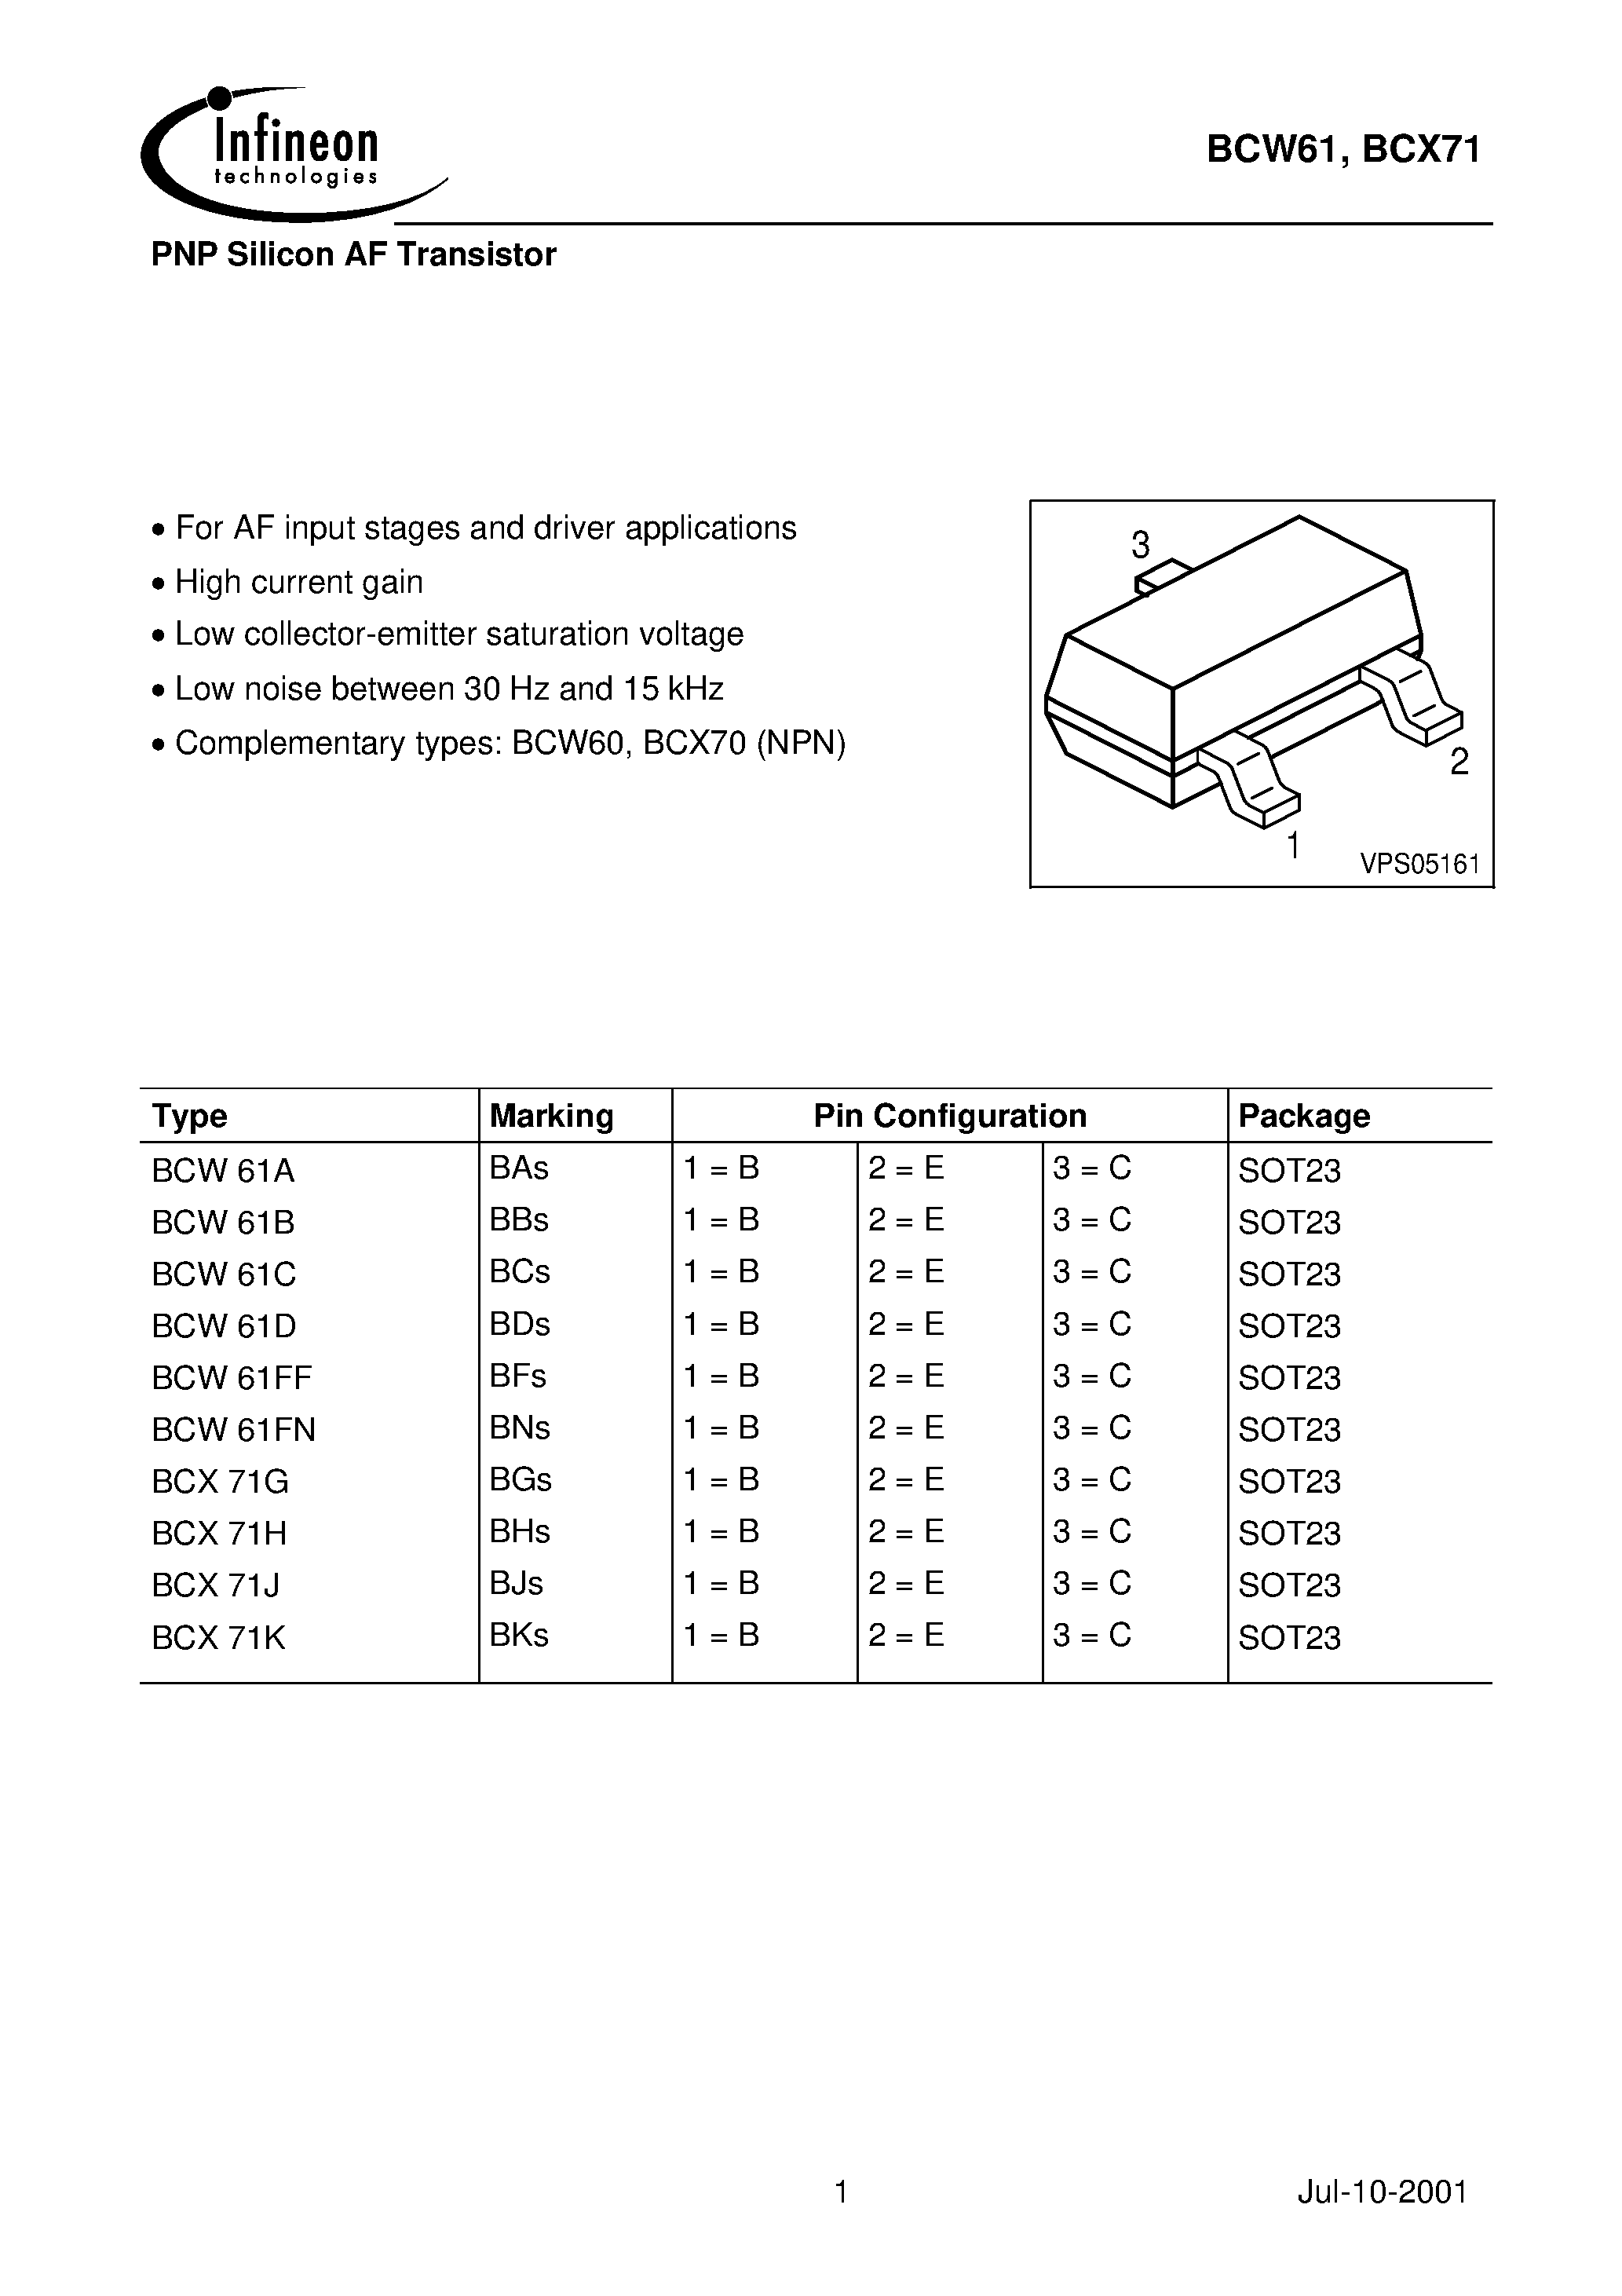 Datasheet BCX71K - PNP Silicon AF Transistor page 1